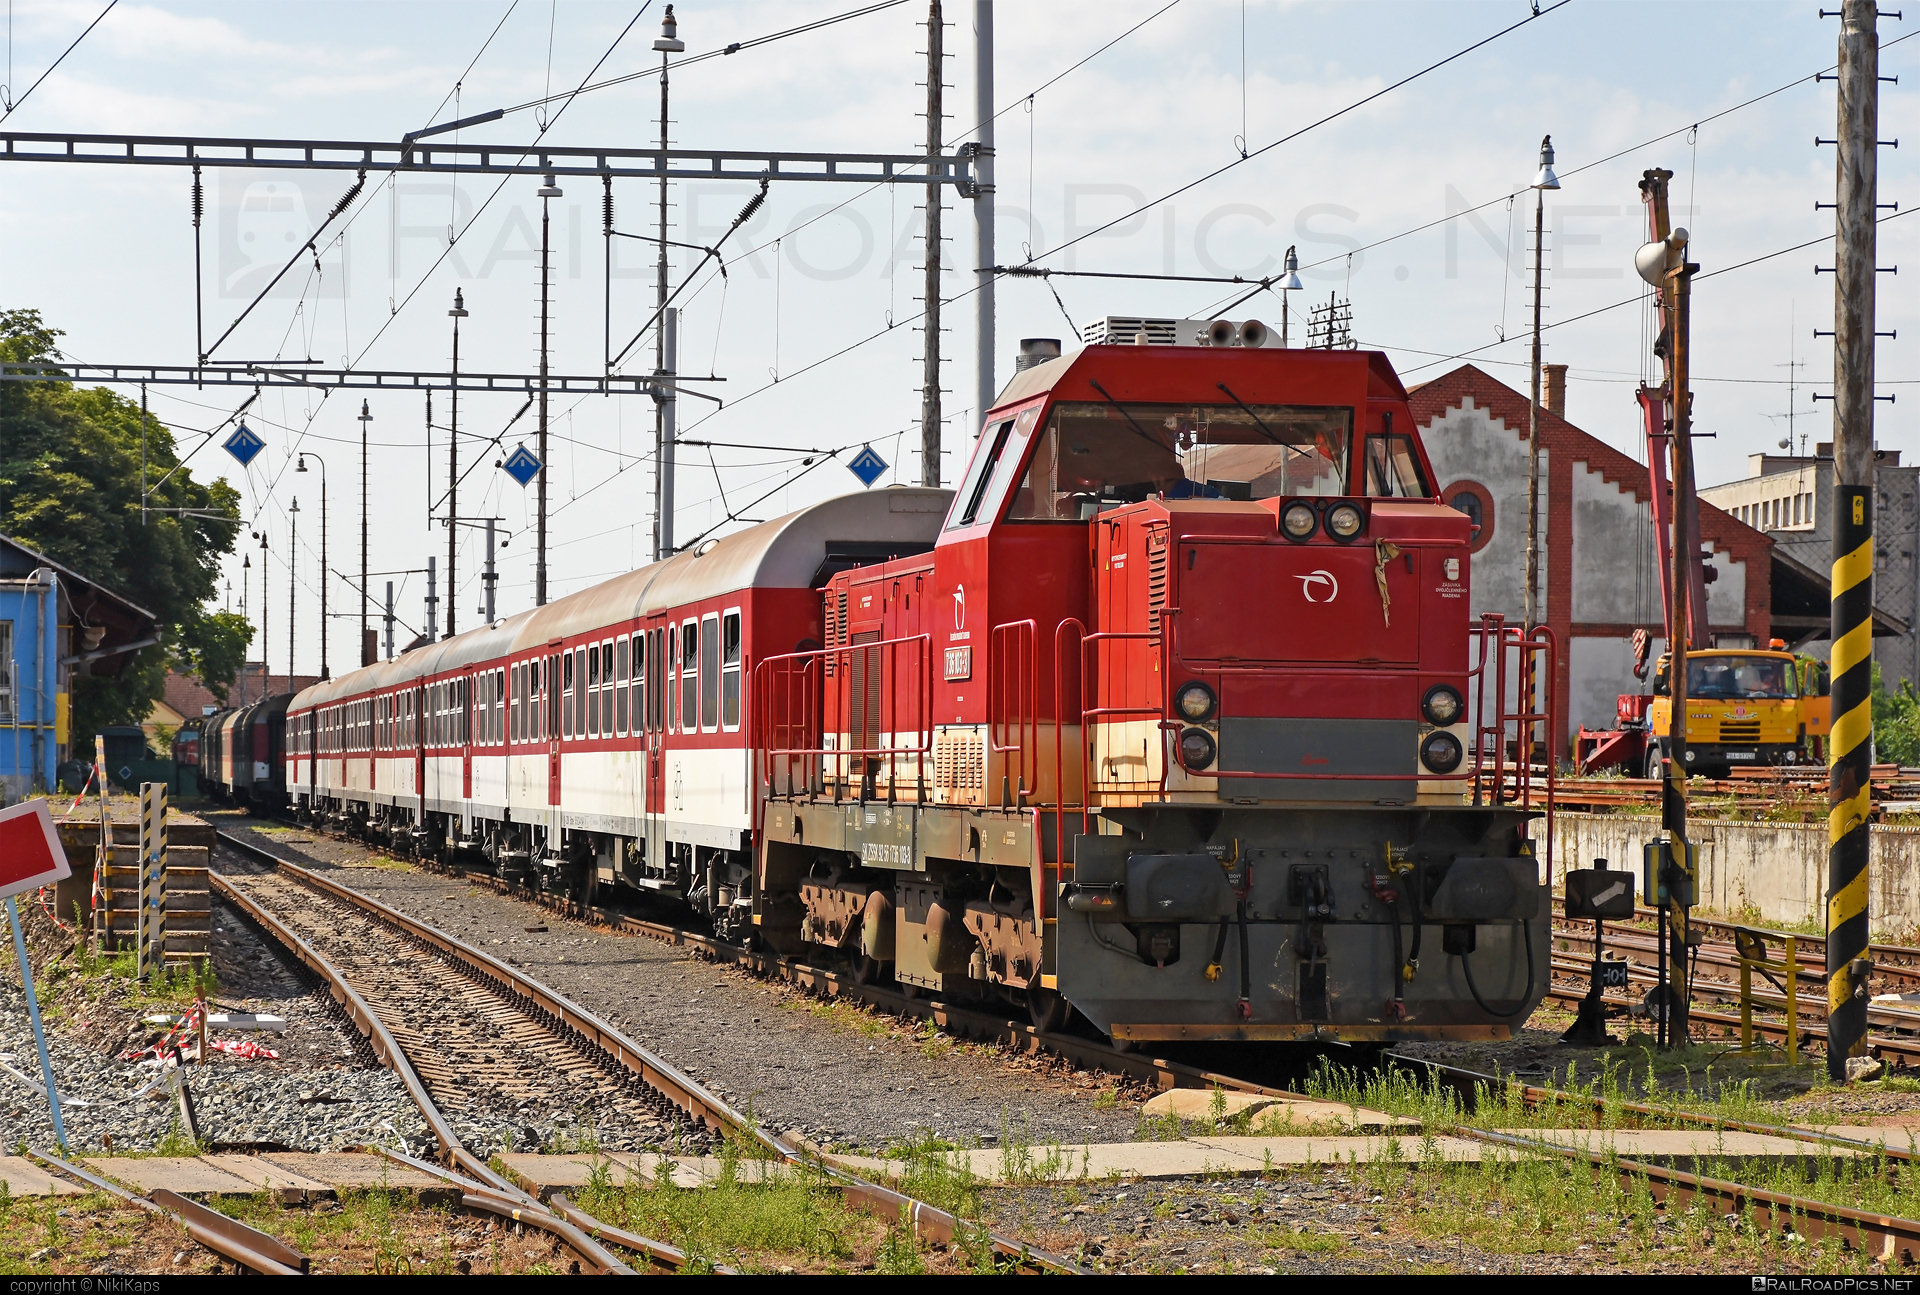 ŽOS Zvolen Class 736 - 736 103-3 operated by Železničná Spoločnost' Slovensko, a.s. #ZeleznicnaSpolocnostSlovensko #locomotive736 #zoszvolen #zoszvolen736 #zssk